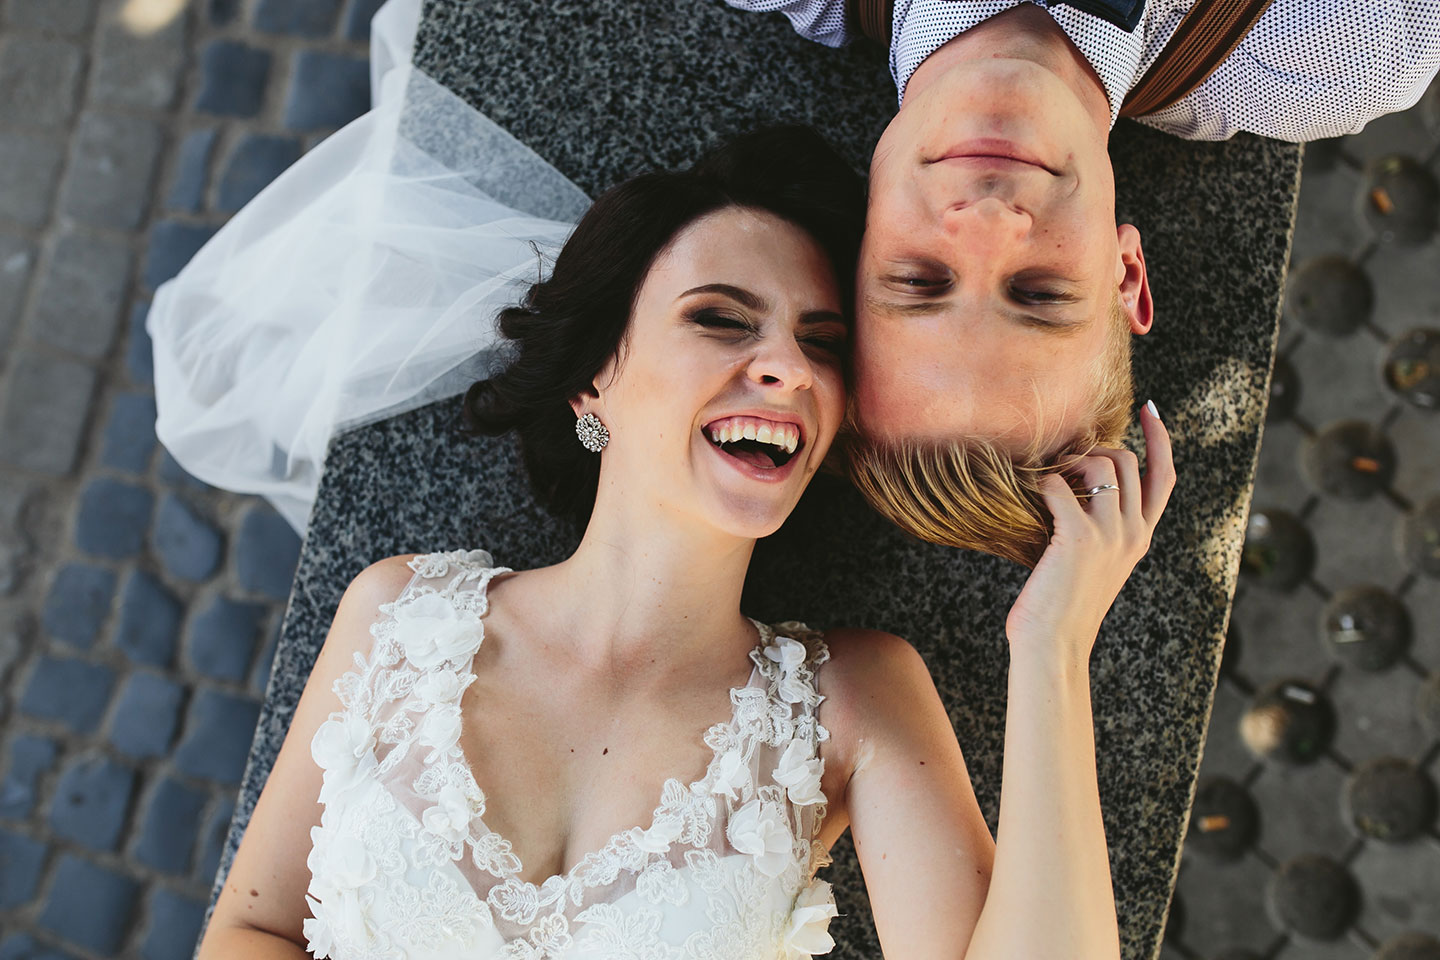 Hochzeitswahn - Braut und Bräutigam liegen auf einer Kopfsteinpflasterstraße, die Köpfe zusammengelegt, und lächeln freudig. Die Braut trägt ein weißes Spitzenbrautkleid, der Bräutigam ein Hemd mit Hosenträgern. Die Kulisse lässt einen verspielten, romantischen Moment erahnen.